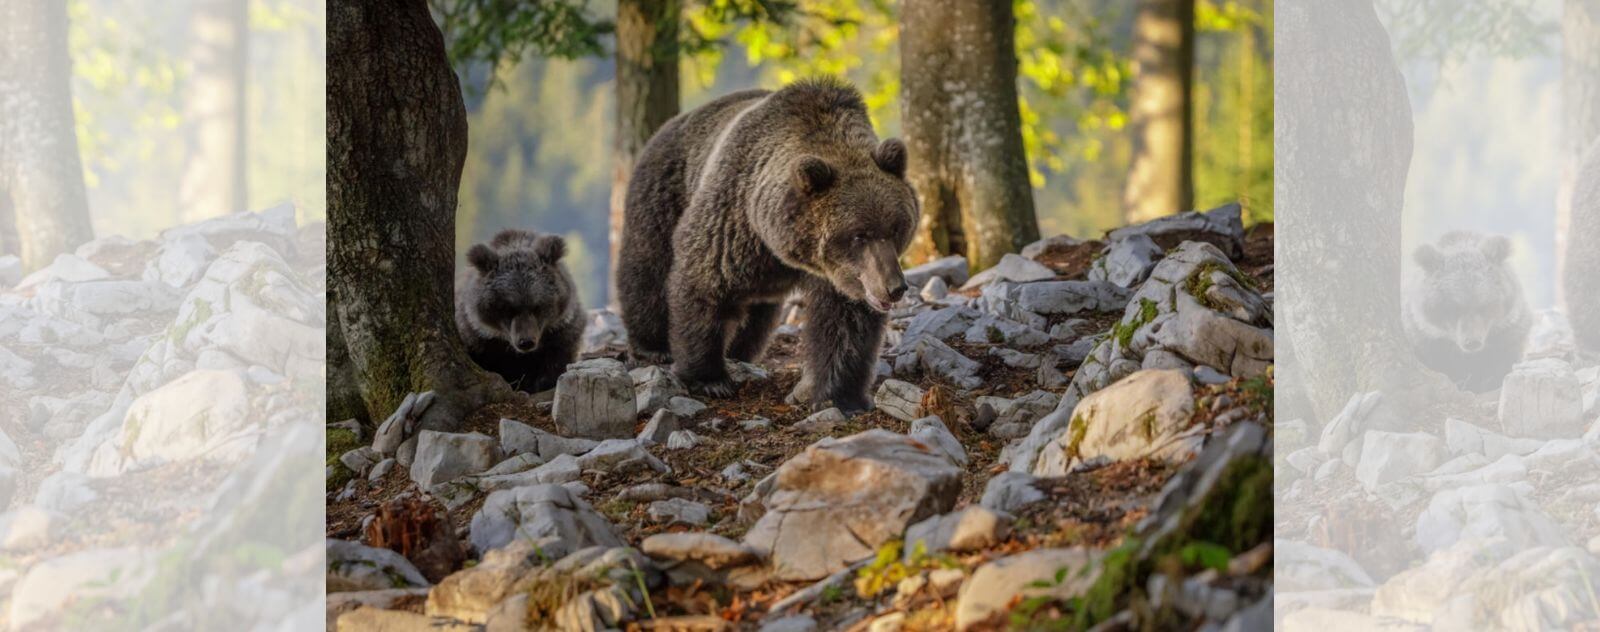 Ourson avec sa Maman Ours dans la Forêt qui Cherche à Manger